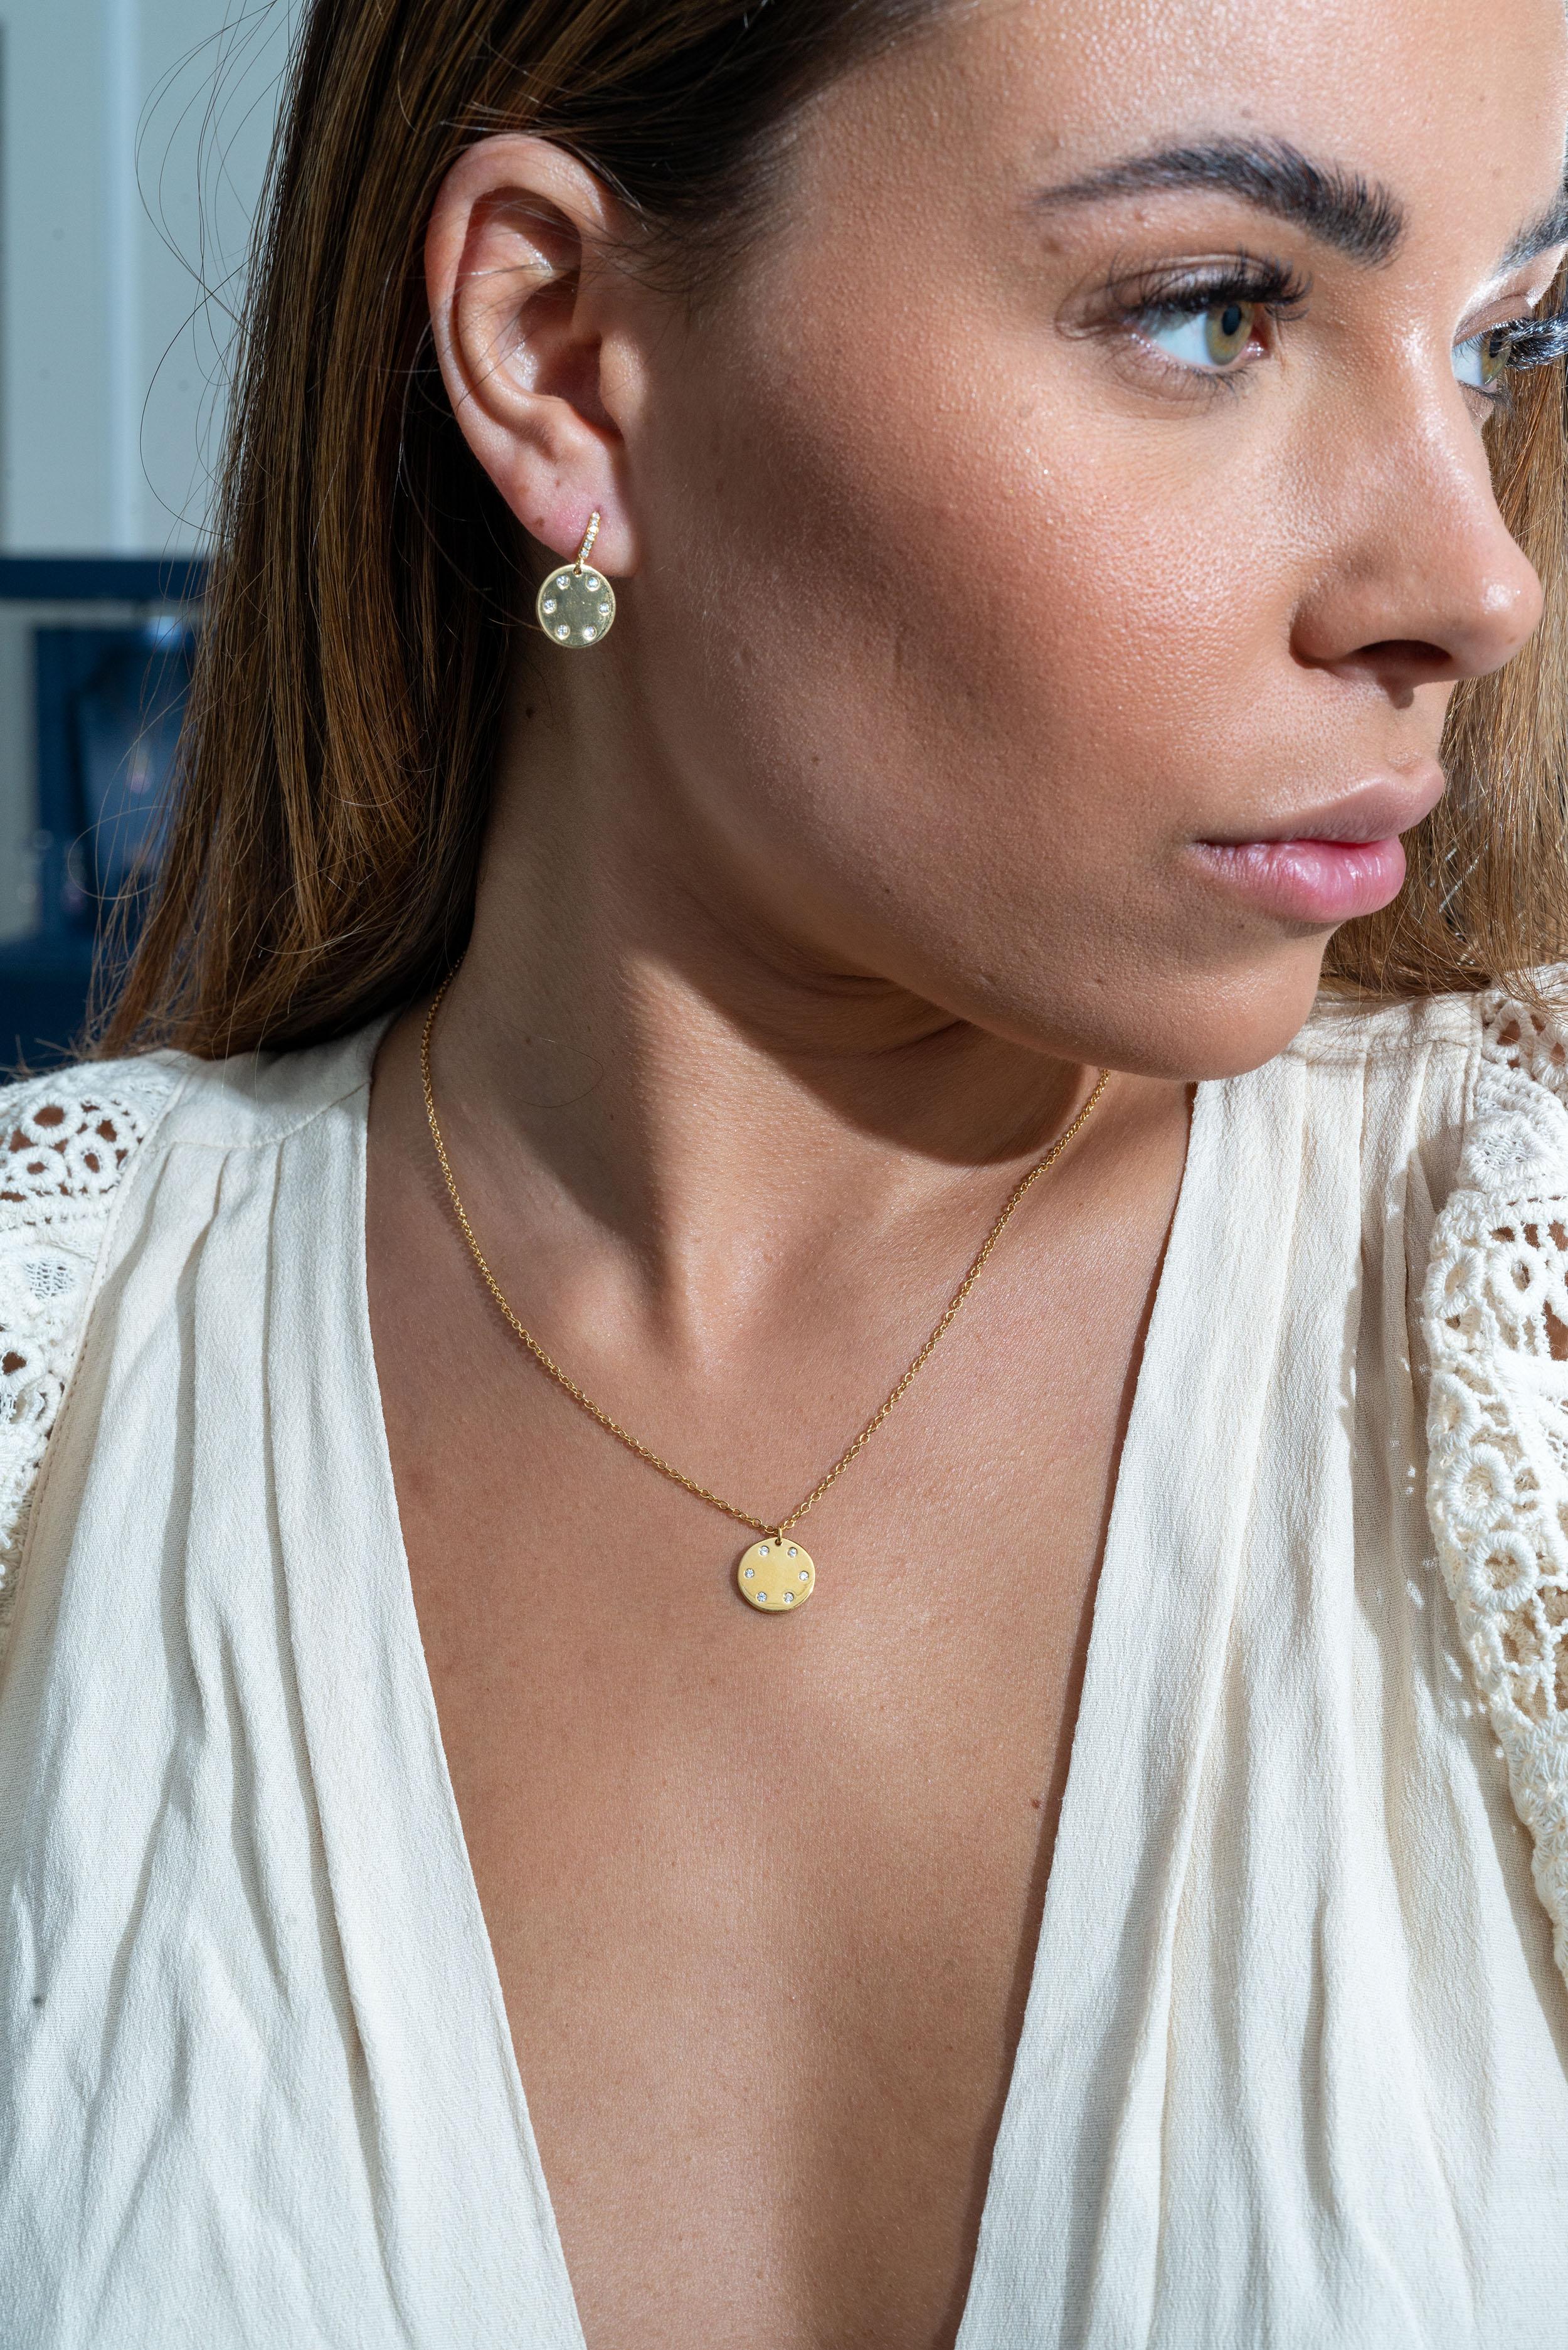 Die Ohrringe aus 18 Karat Gelbgold sind aus der Jackpot Collection'S. Diese Ohrringe sind mit runden farblosen Diamanten von insgesamt 0,21 Karat besetzt. Das Gesamtgewicht des Metalls beträgt 4.15 g. Die Ohrringe sind 2 cm lang. Großartig für jede